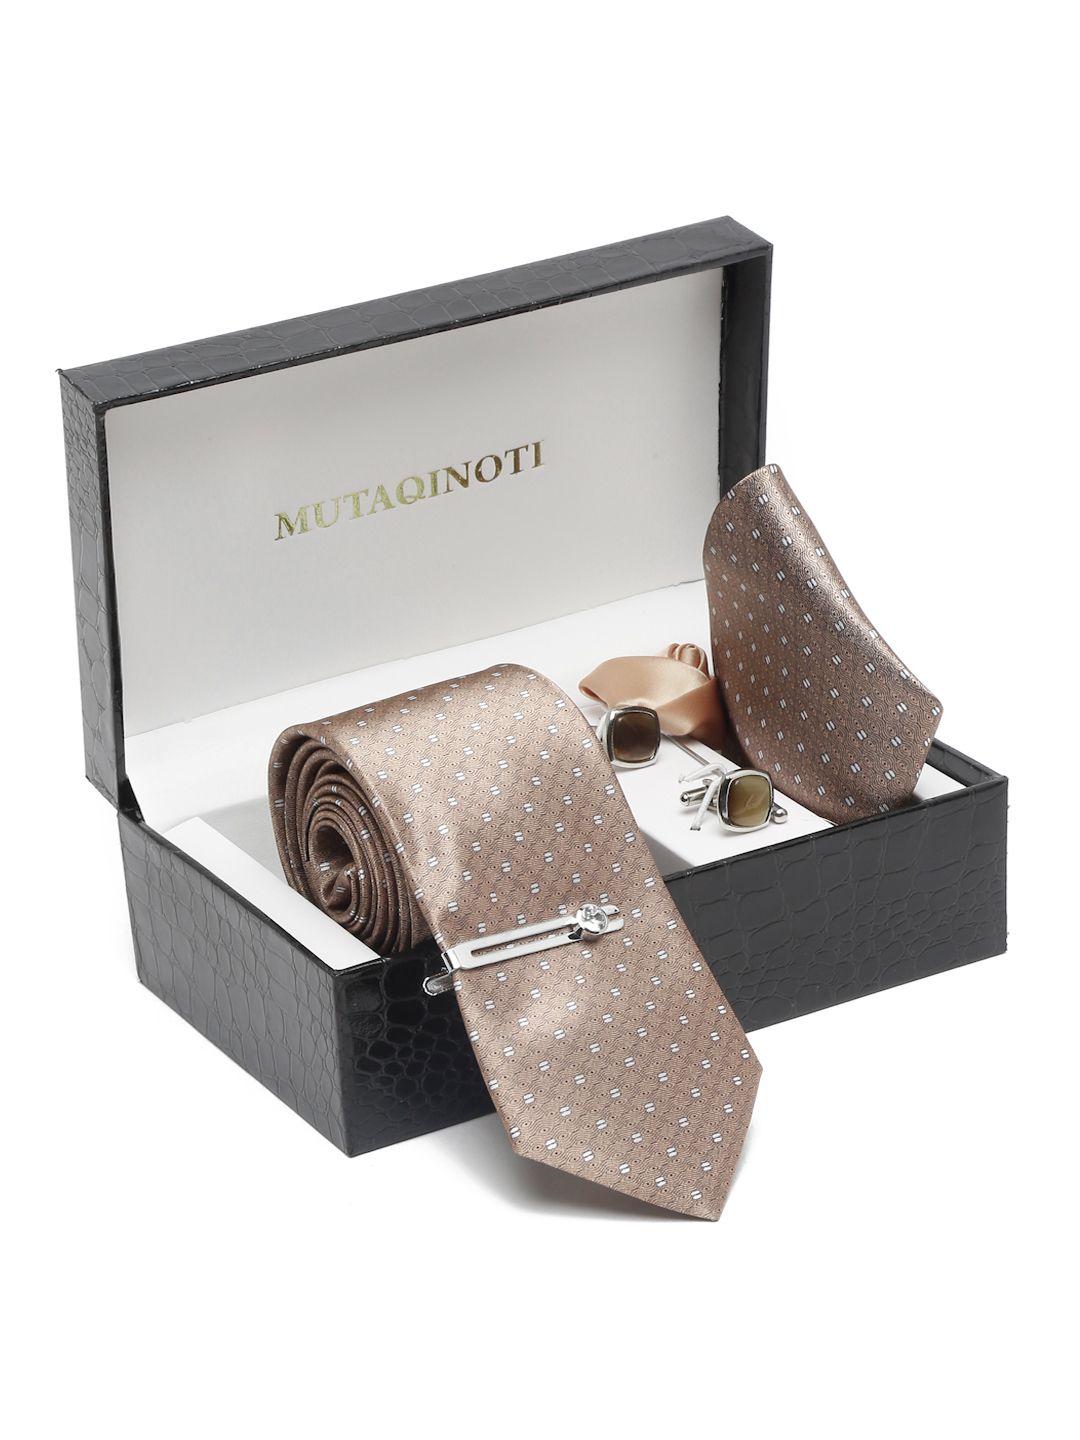 mutaqinoti men textured brown silk blend necktie accessory gift set